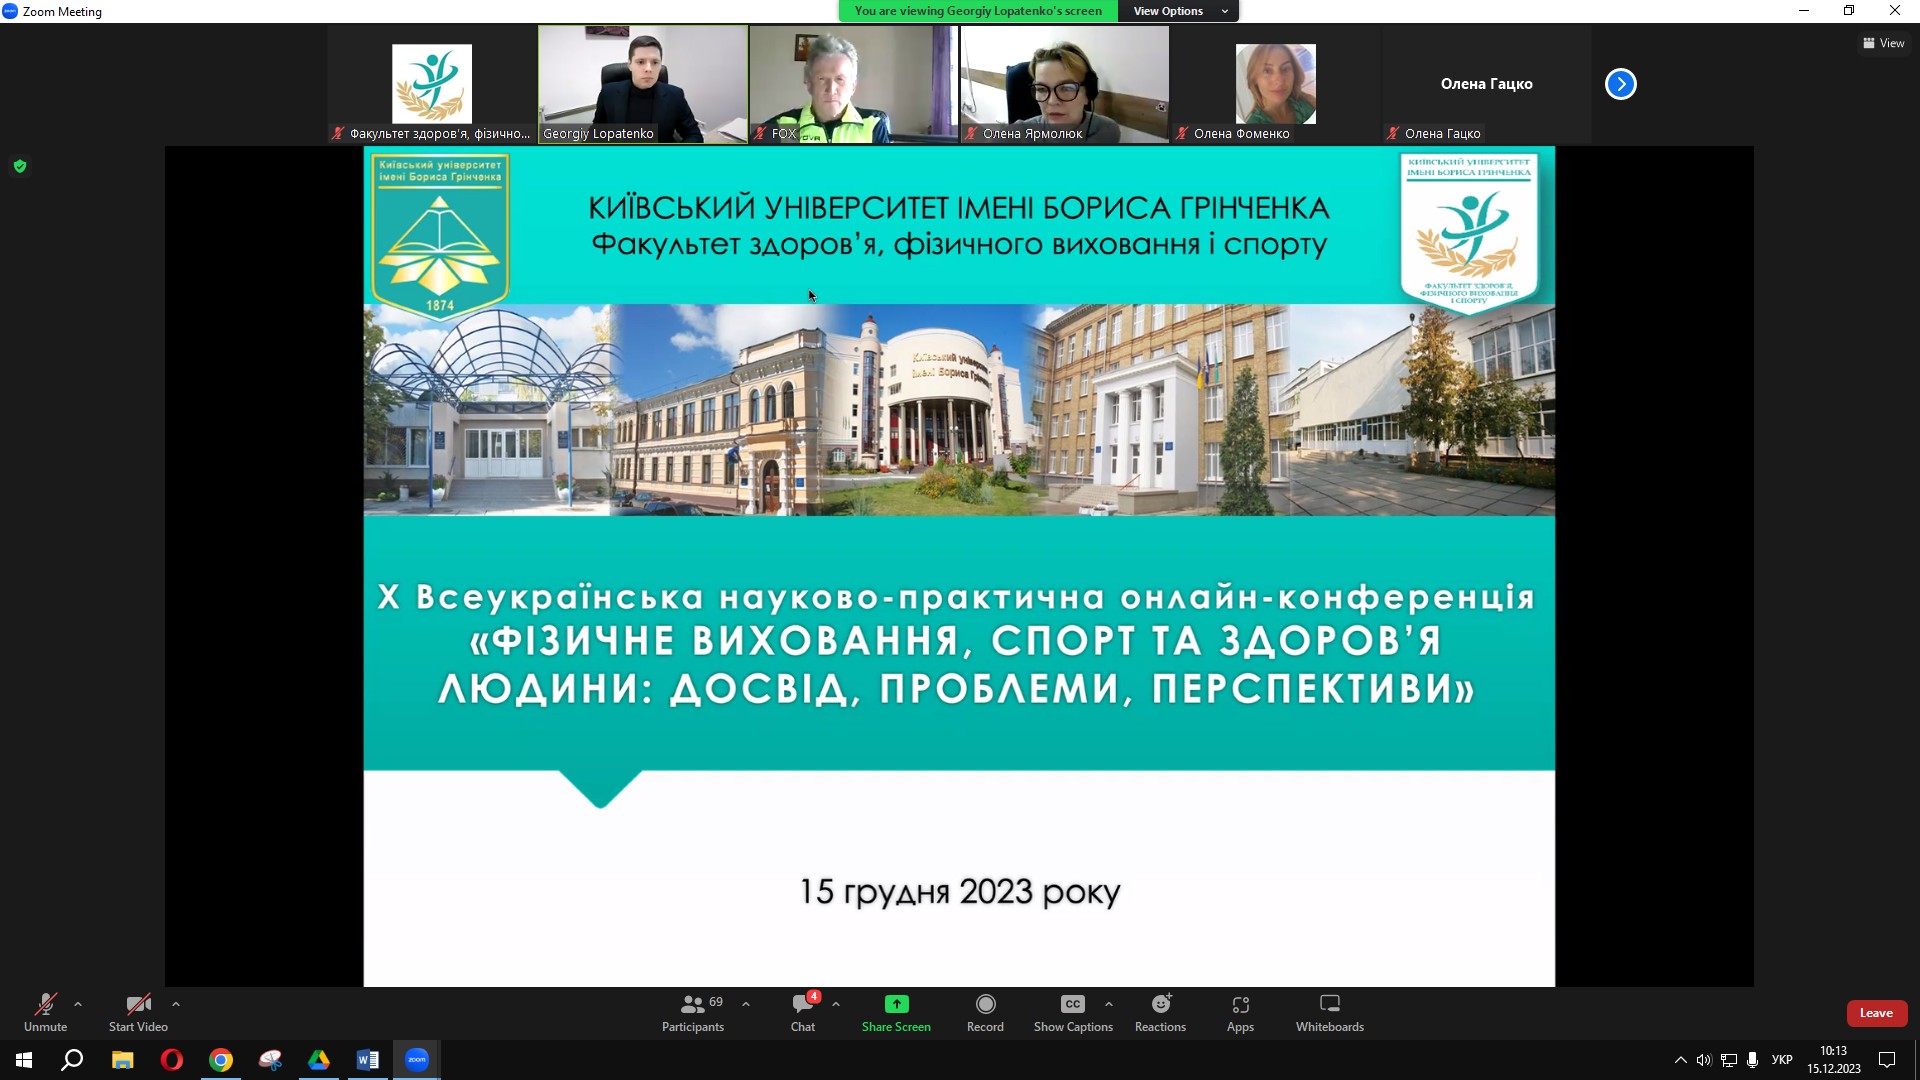 Х Всеукраїнська науково-практична онлайн-конференція «Фізичне виховання спорт та здоров’я людини: досвід, проблеми, перспективи» (у циклі Анохінських читань)